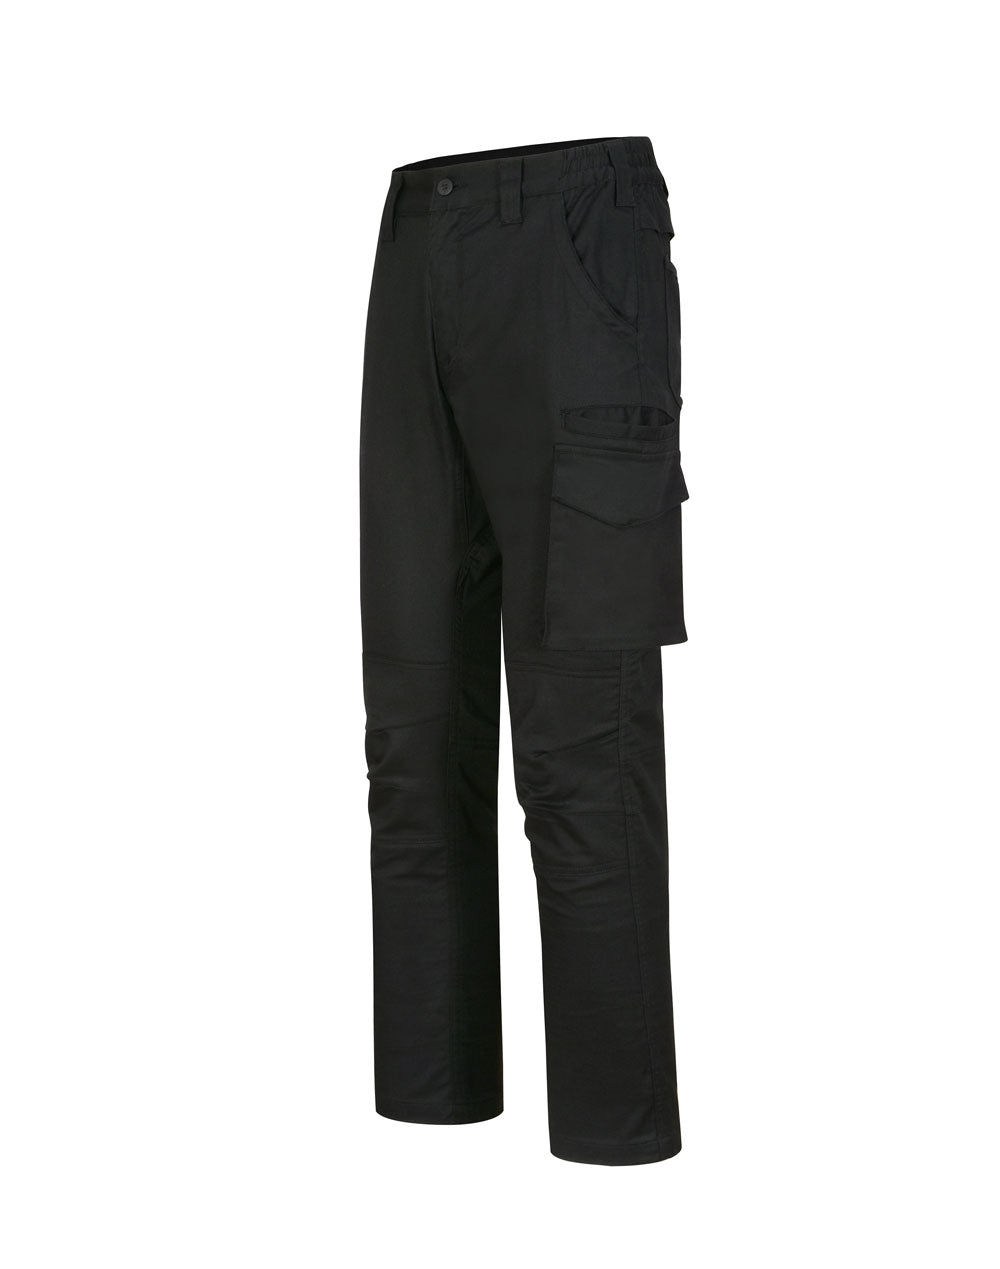 Unisex Cotton Stretch Rip-Stop Work Pants WP26 Work Wear Australian Industrial Wear 72R Black 